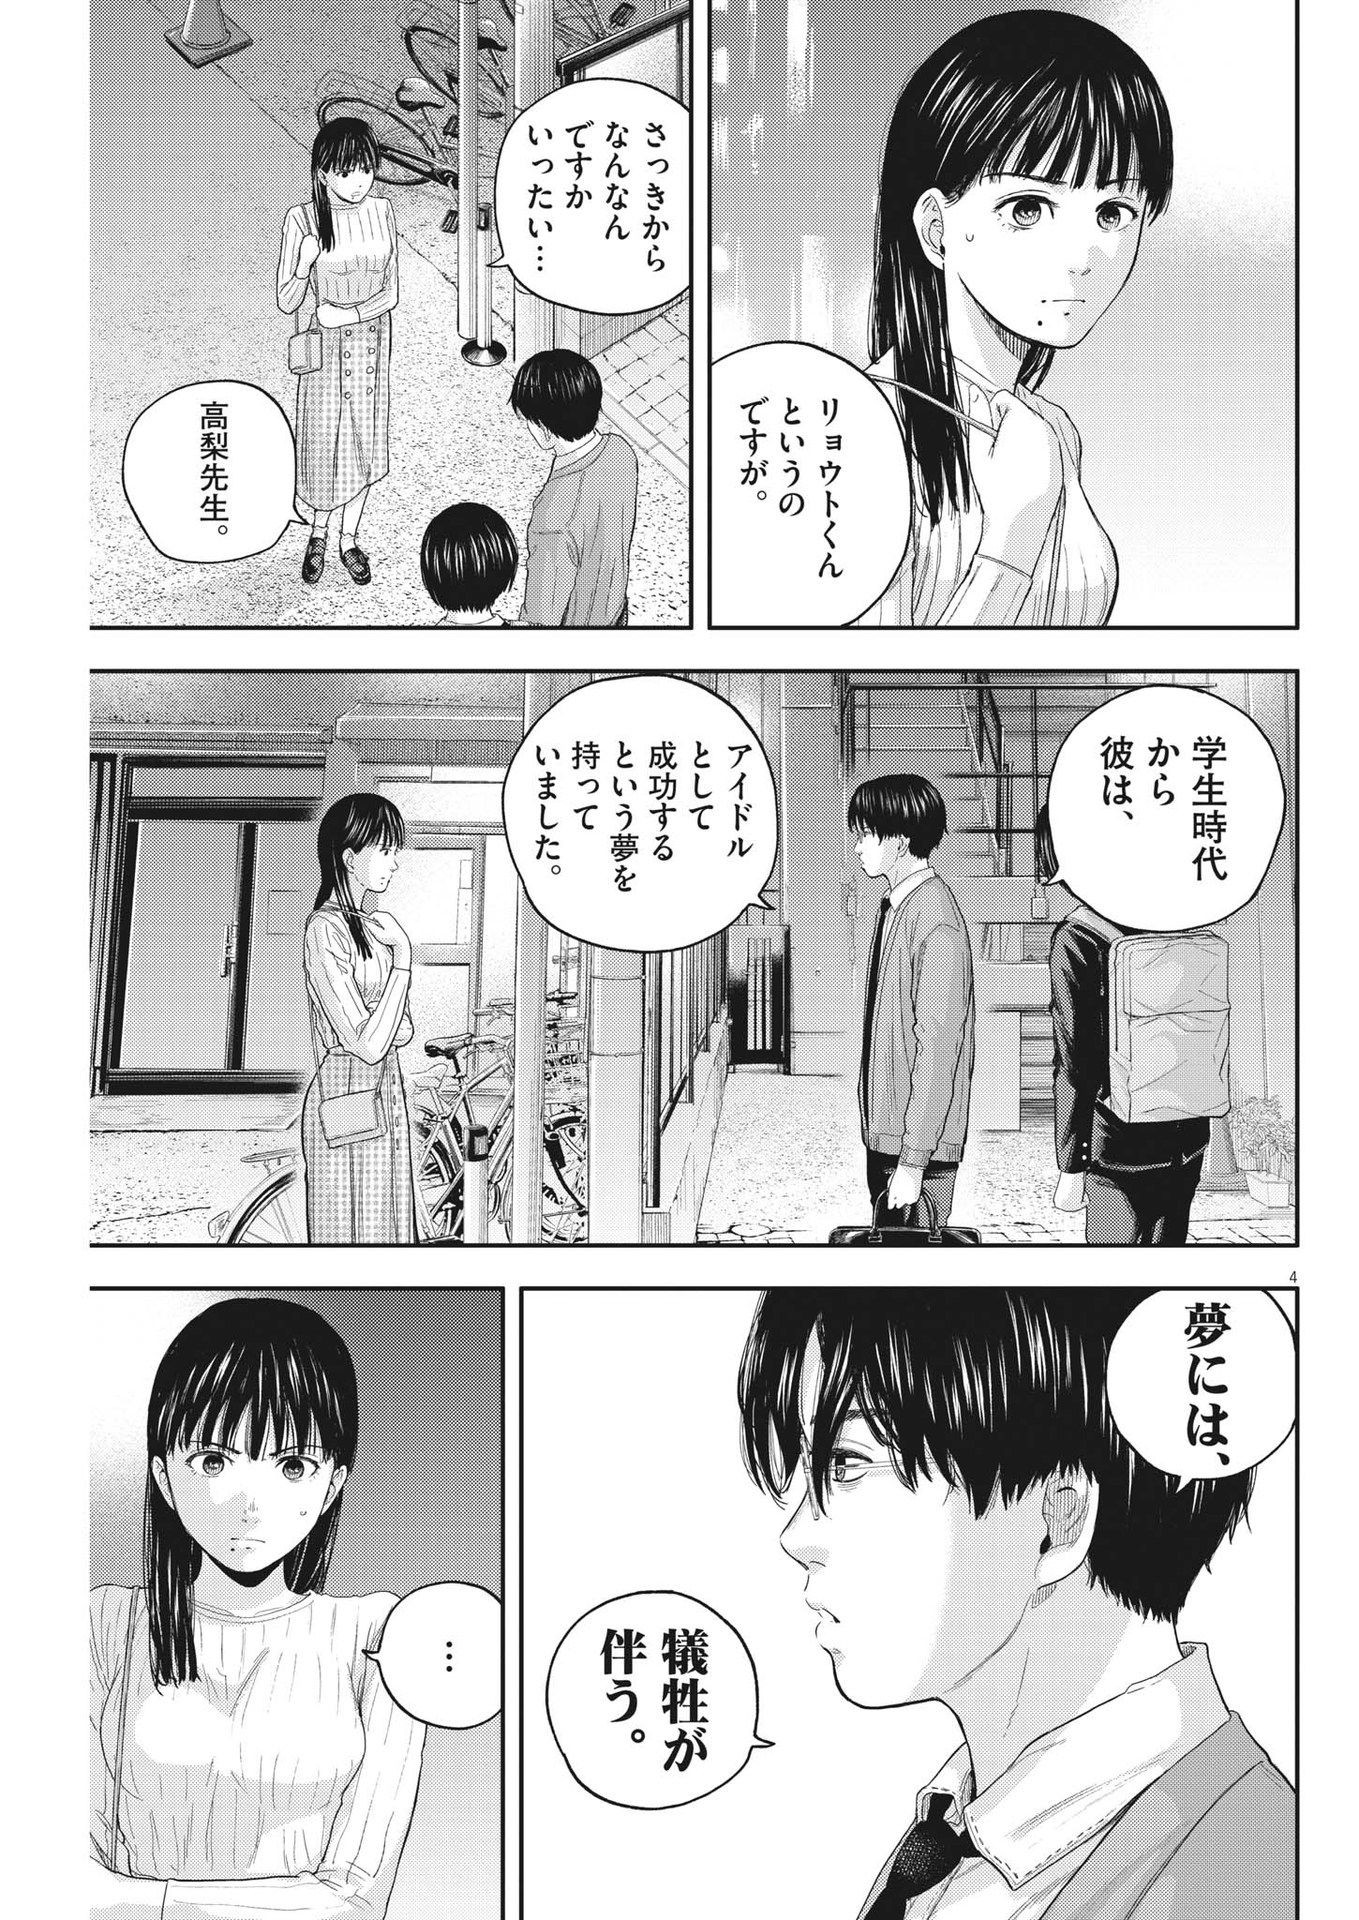 Yumenashi-sensei no Shinroshidou - Chapter 12 - Page 5